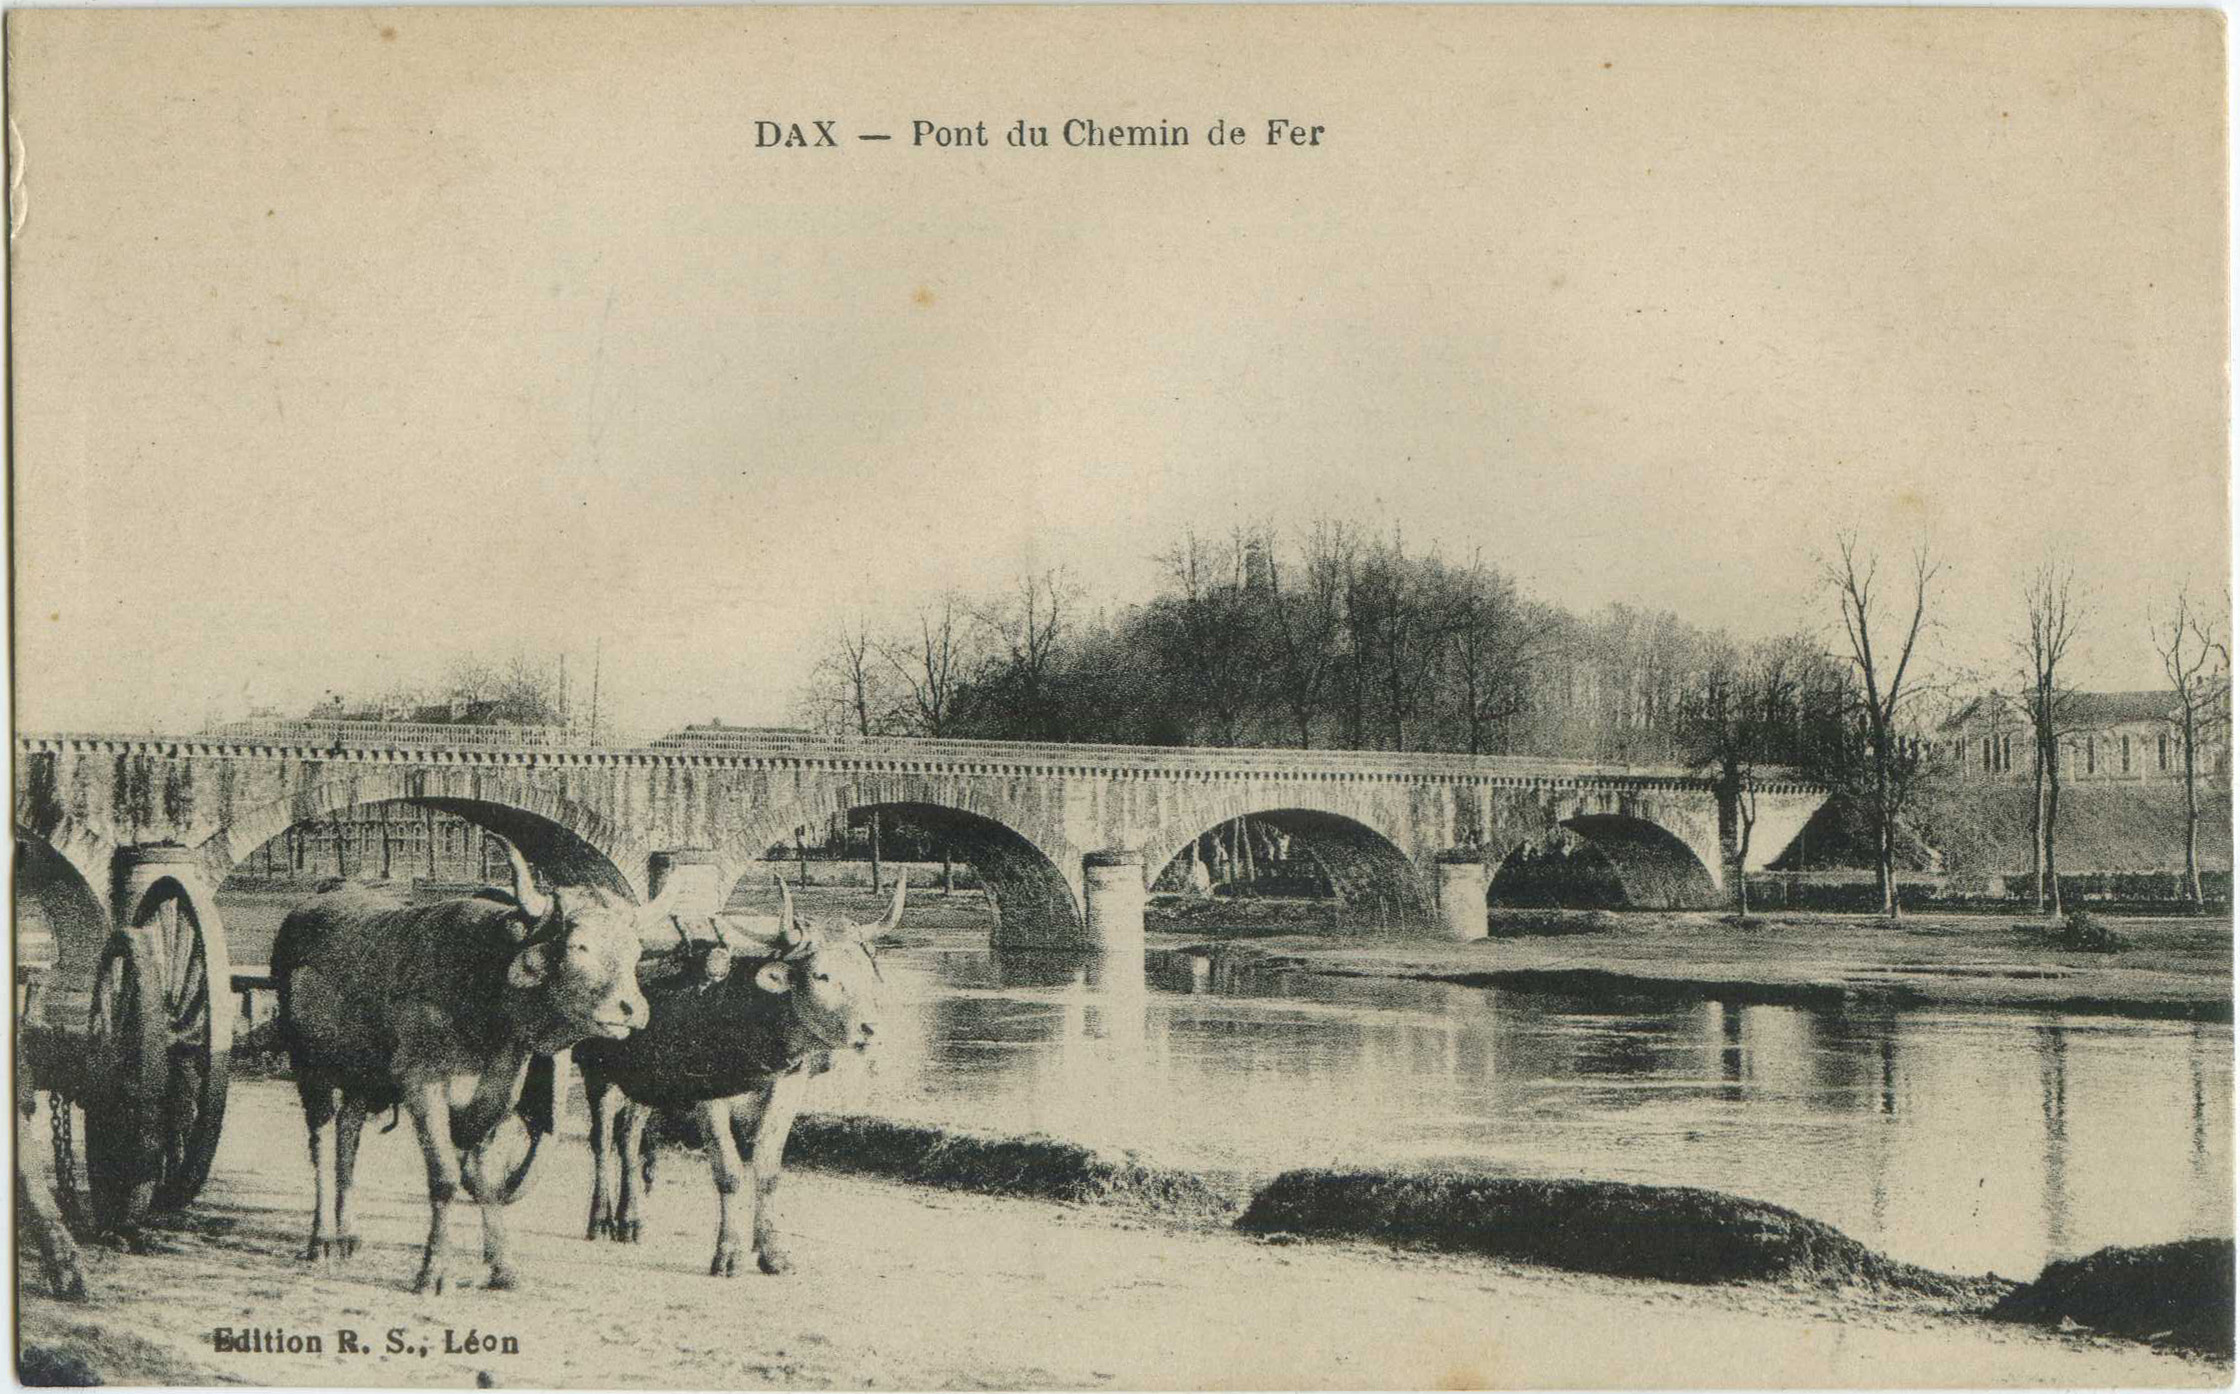 Dax - Pont du Chemin de Fer